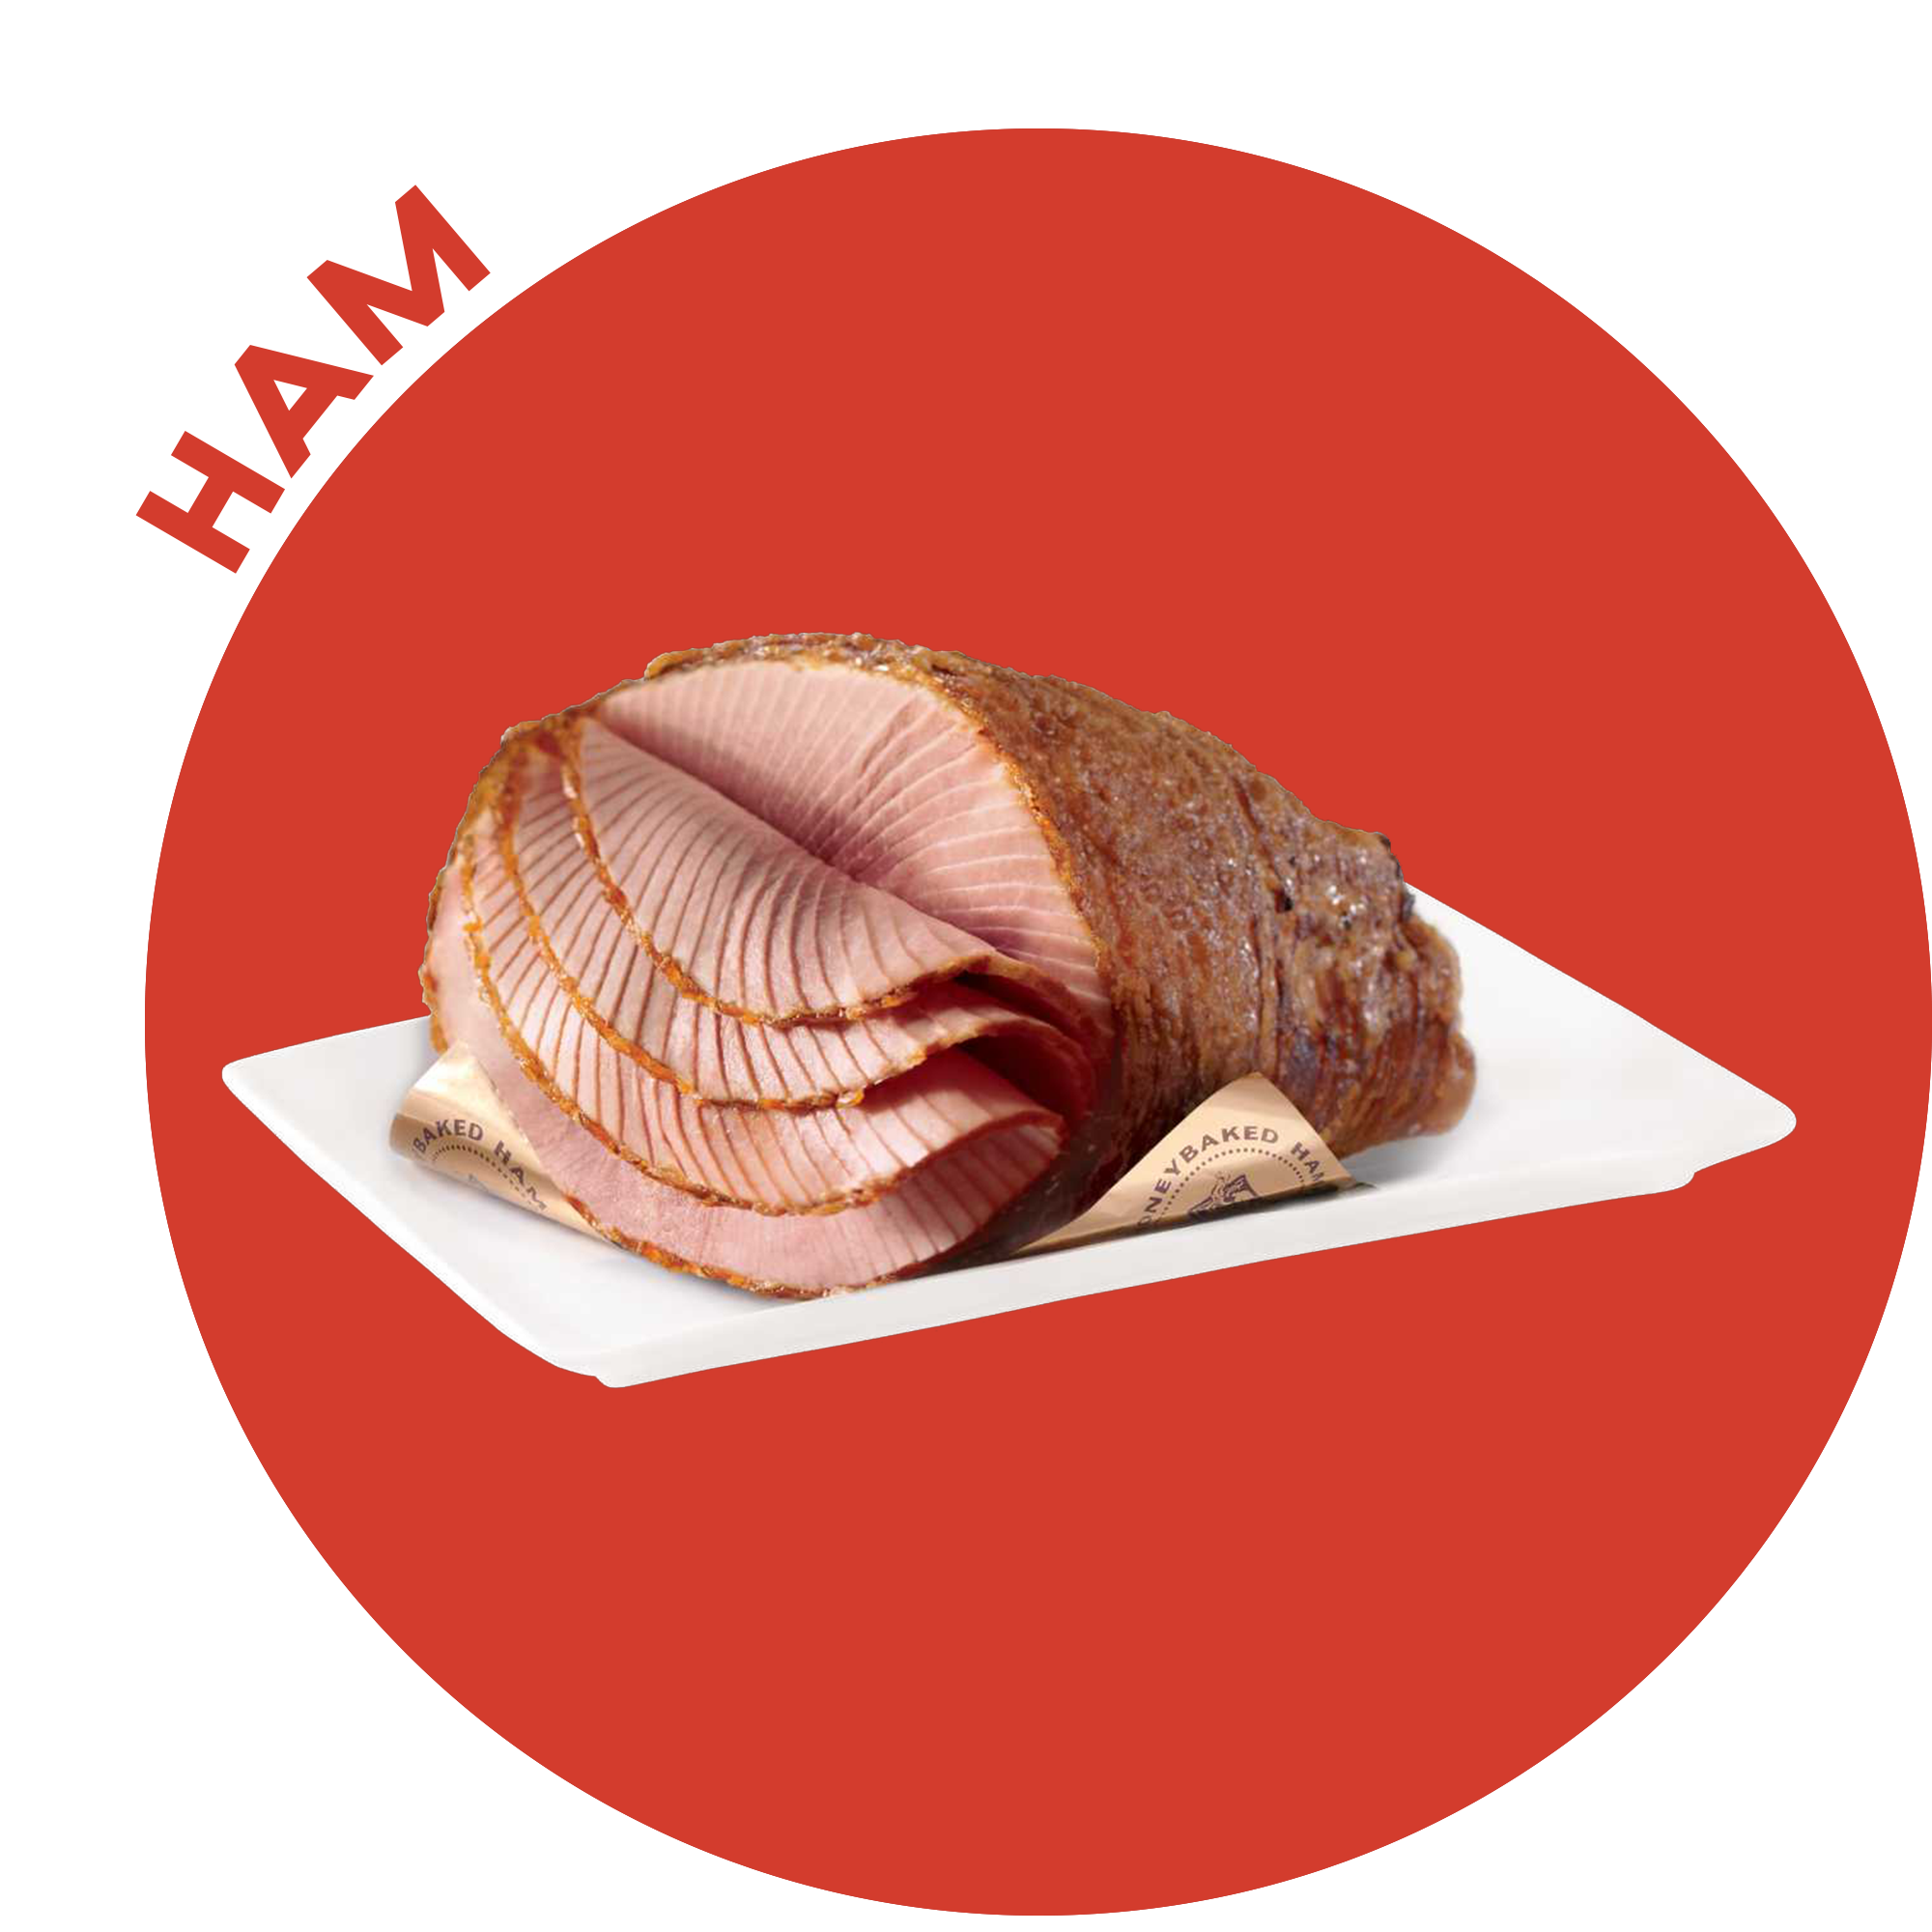 Dish, Food, Cuisine, Ham, Turkey ham, Roast beef, Ingredient, Gammon, Black forest ham, Kassler, 